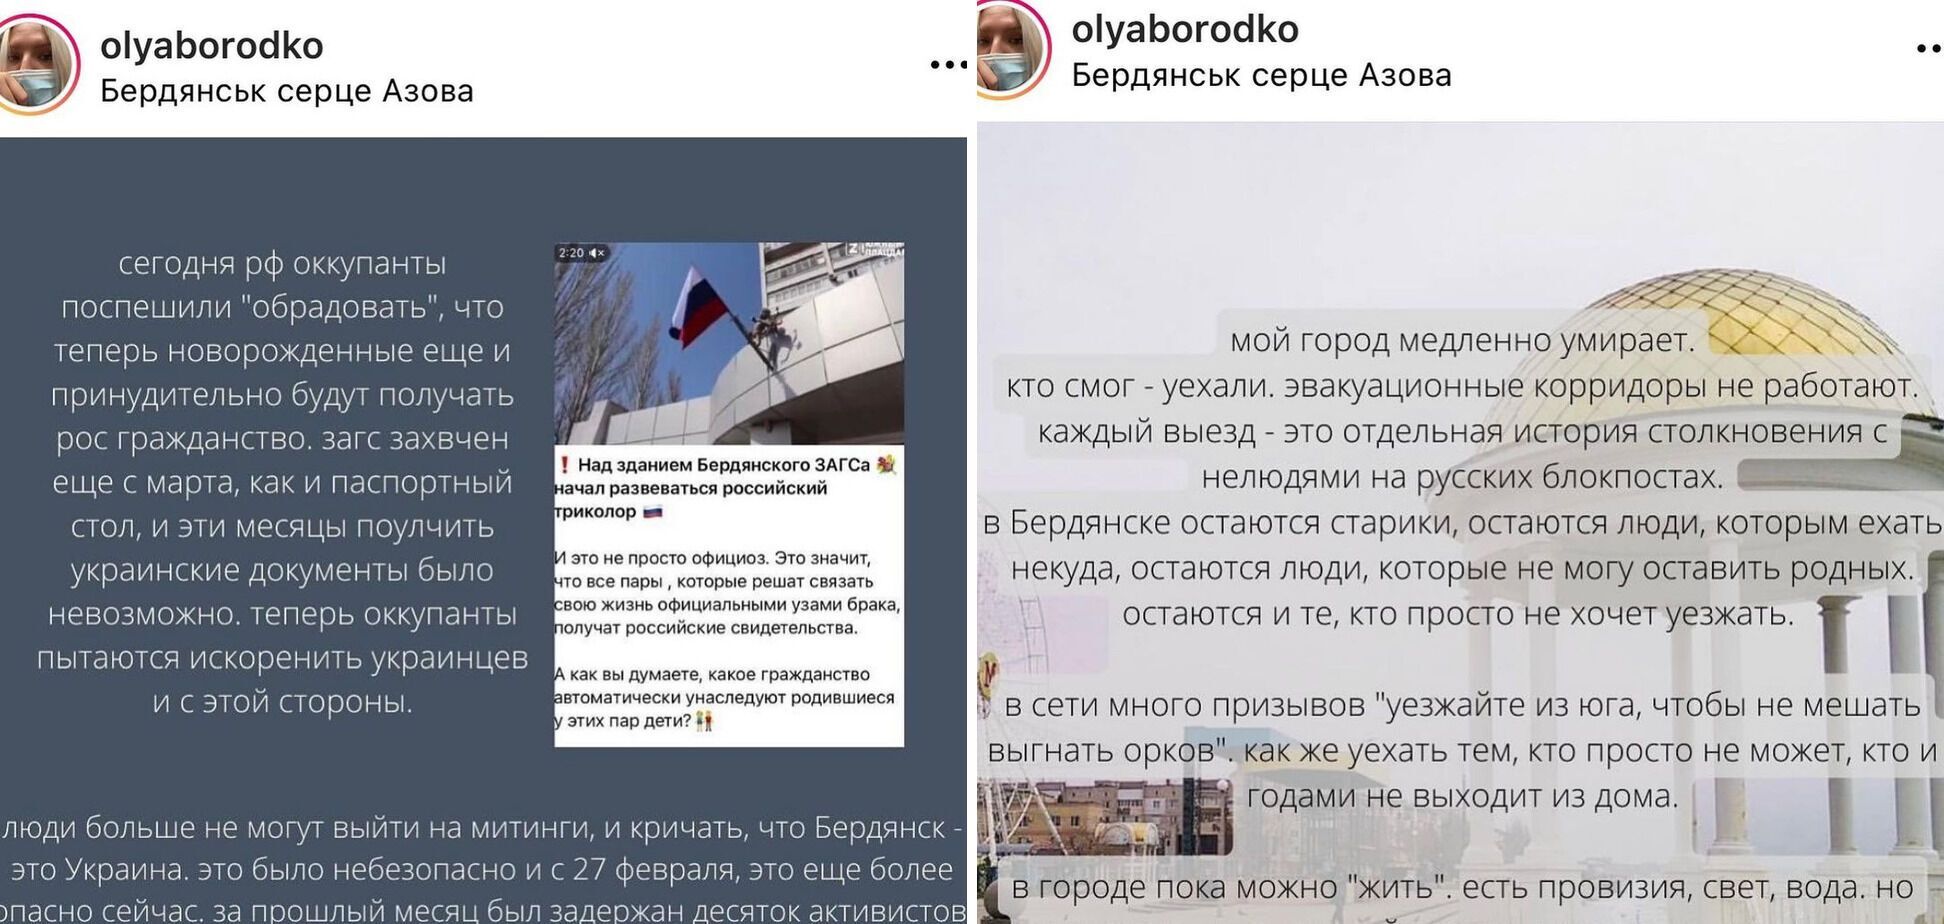 Скриншоты пропагандистских материалов и рассказ украинцев.